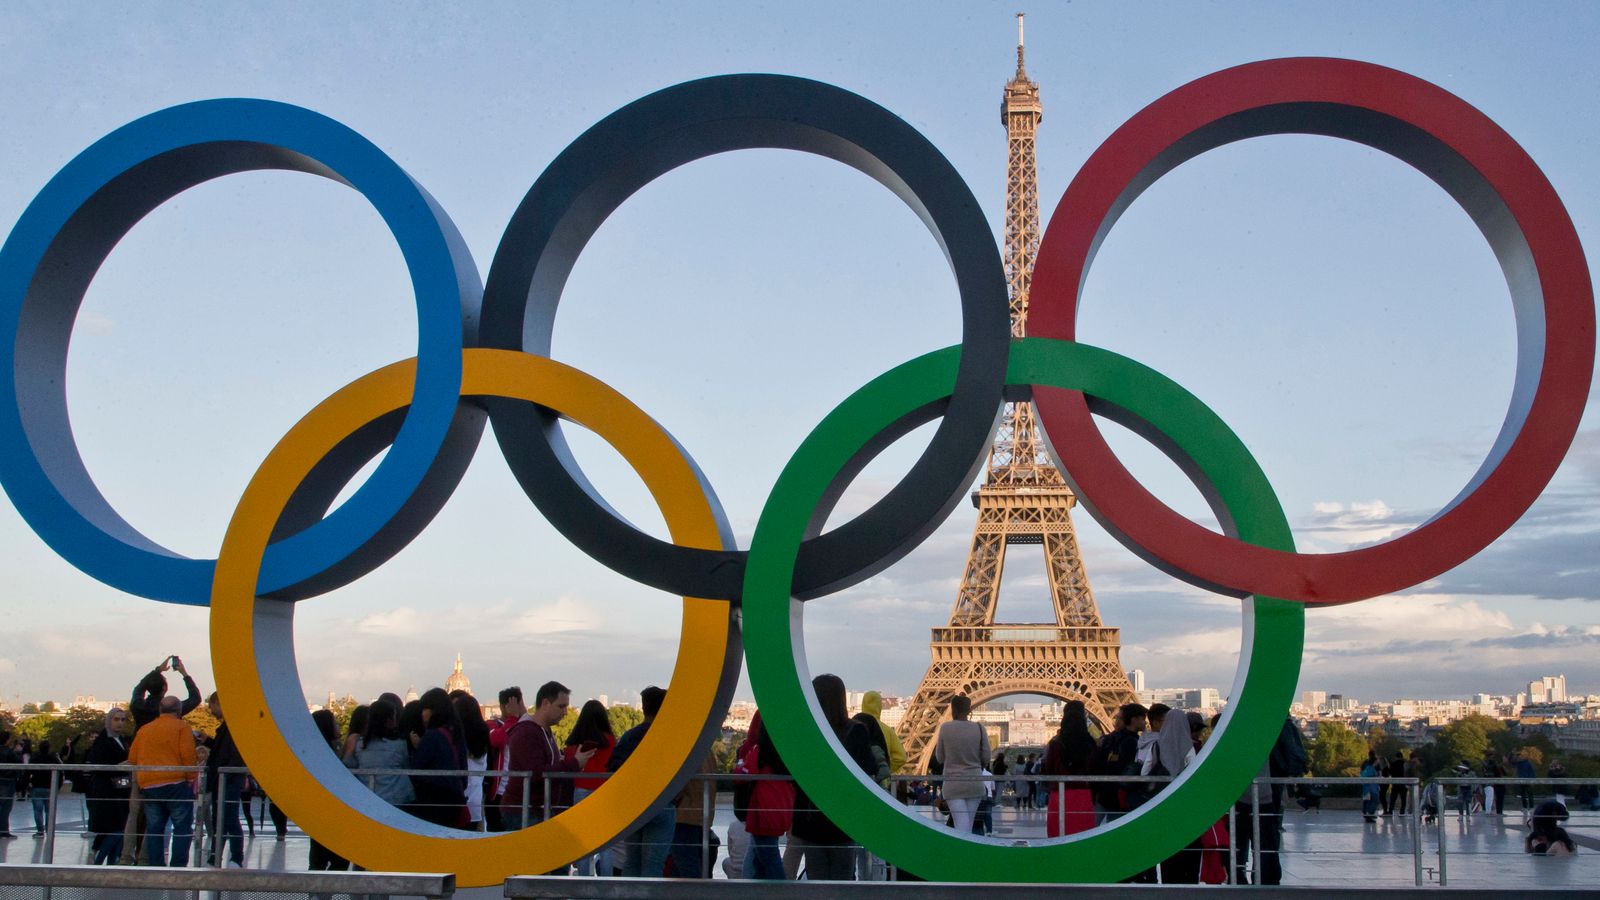 Jeux olympiques : la Grande-Bretagne obtient quatre des cinq places pour les épreuves de relais pour les Jeux de cet été à Paris |  Actualités olympiques